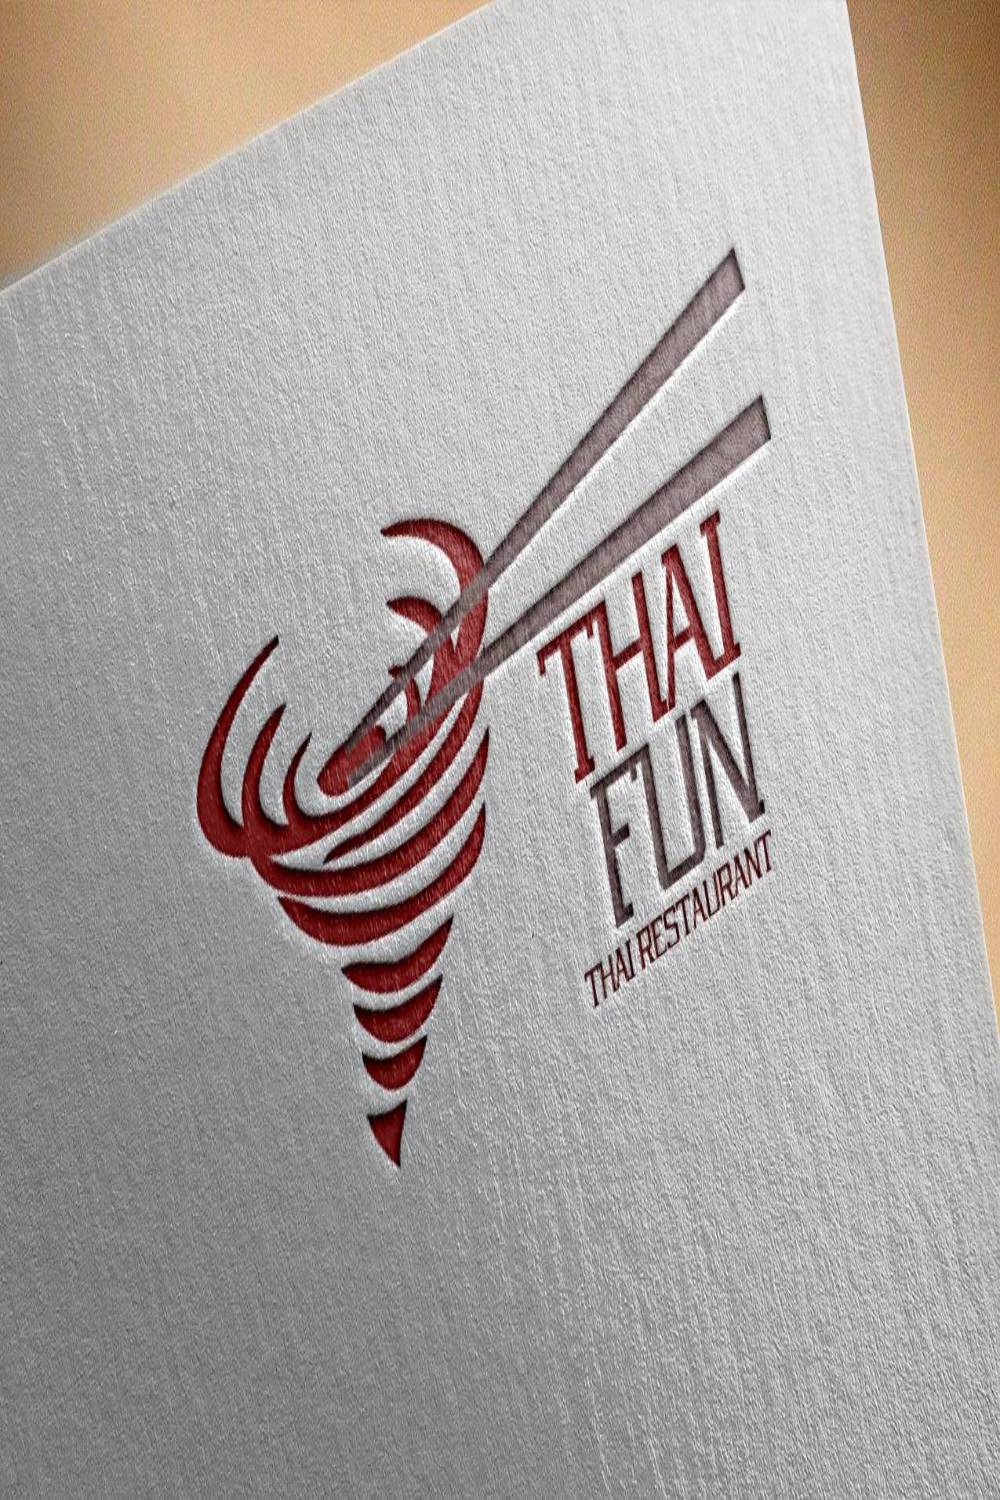 Thai Restaurant Logo Design pinterest image.